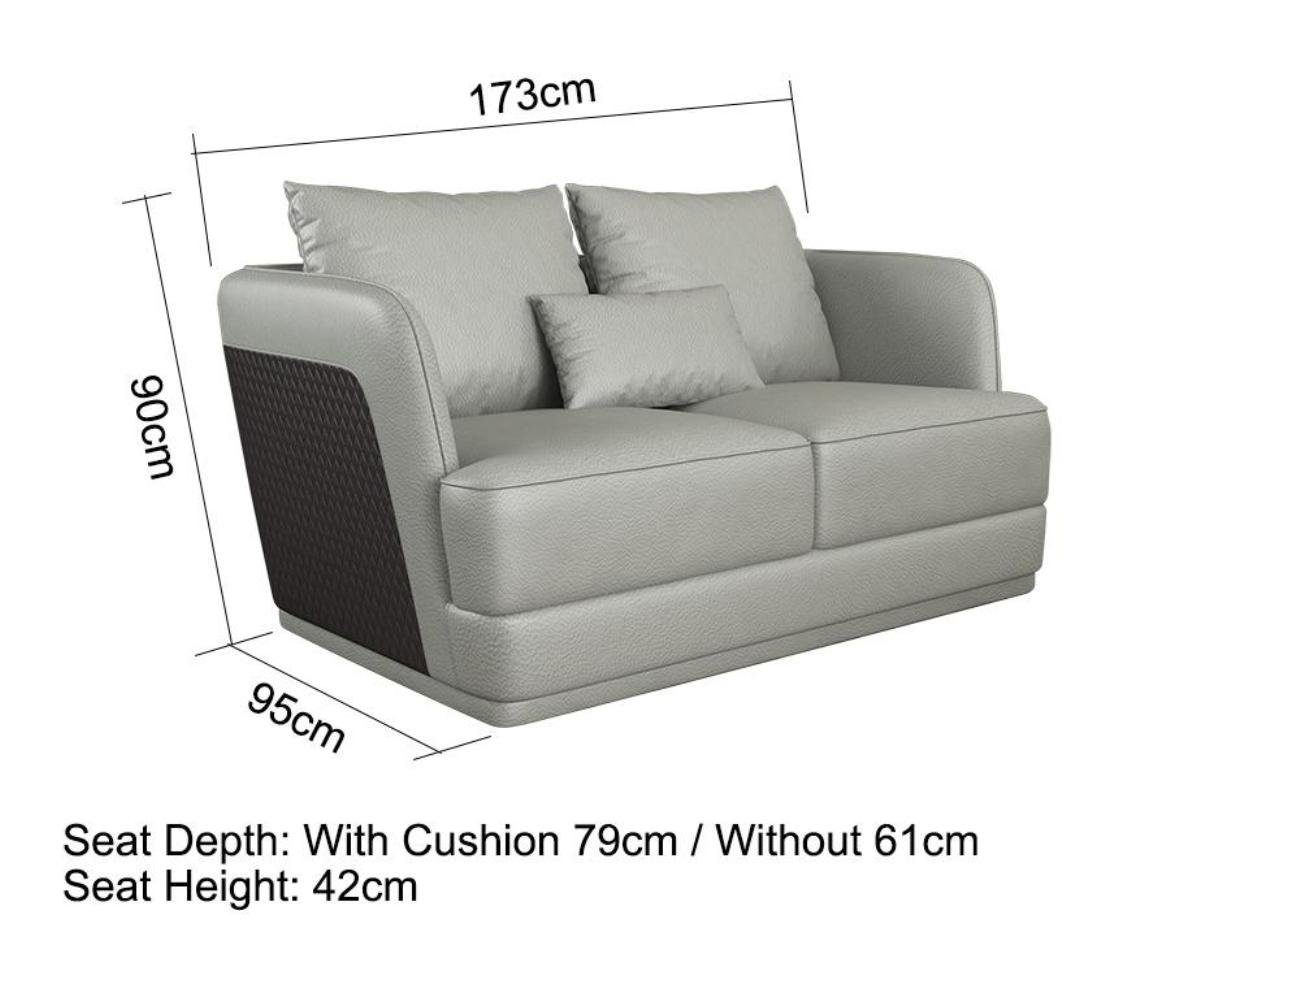 JVmoebel Wohnzimmer-Set, Design Ledersofa Sitzer 3 2 1 Garnitur Silber/Braun Modern Wohnlandschaft Couch